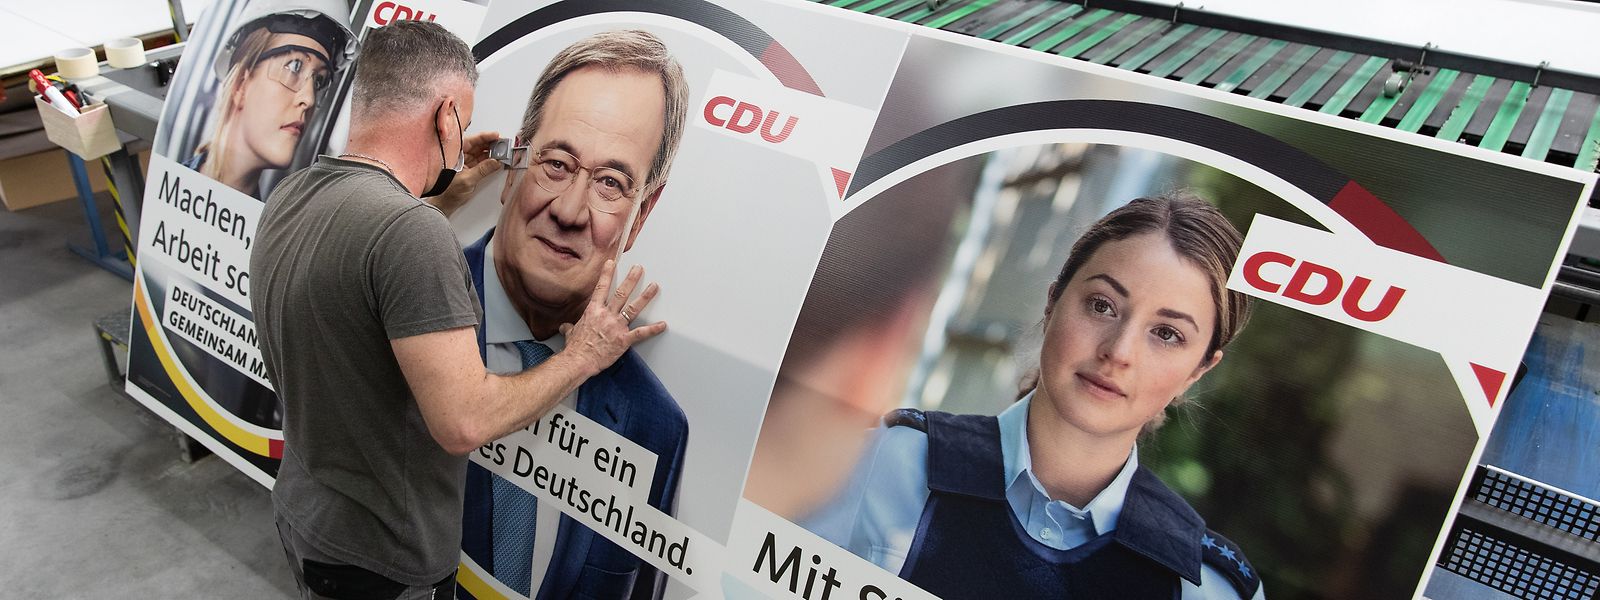 Drucker Marc Berenbrinker kontrolliert mit einer Lupe ein Wahlplakat der CDU mit einem Bild des Bundeskanzlerkandidaten Armin Laschet darauf.